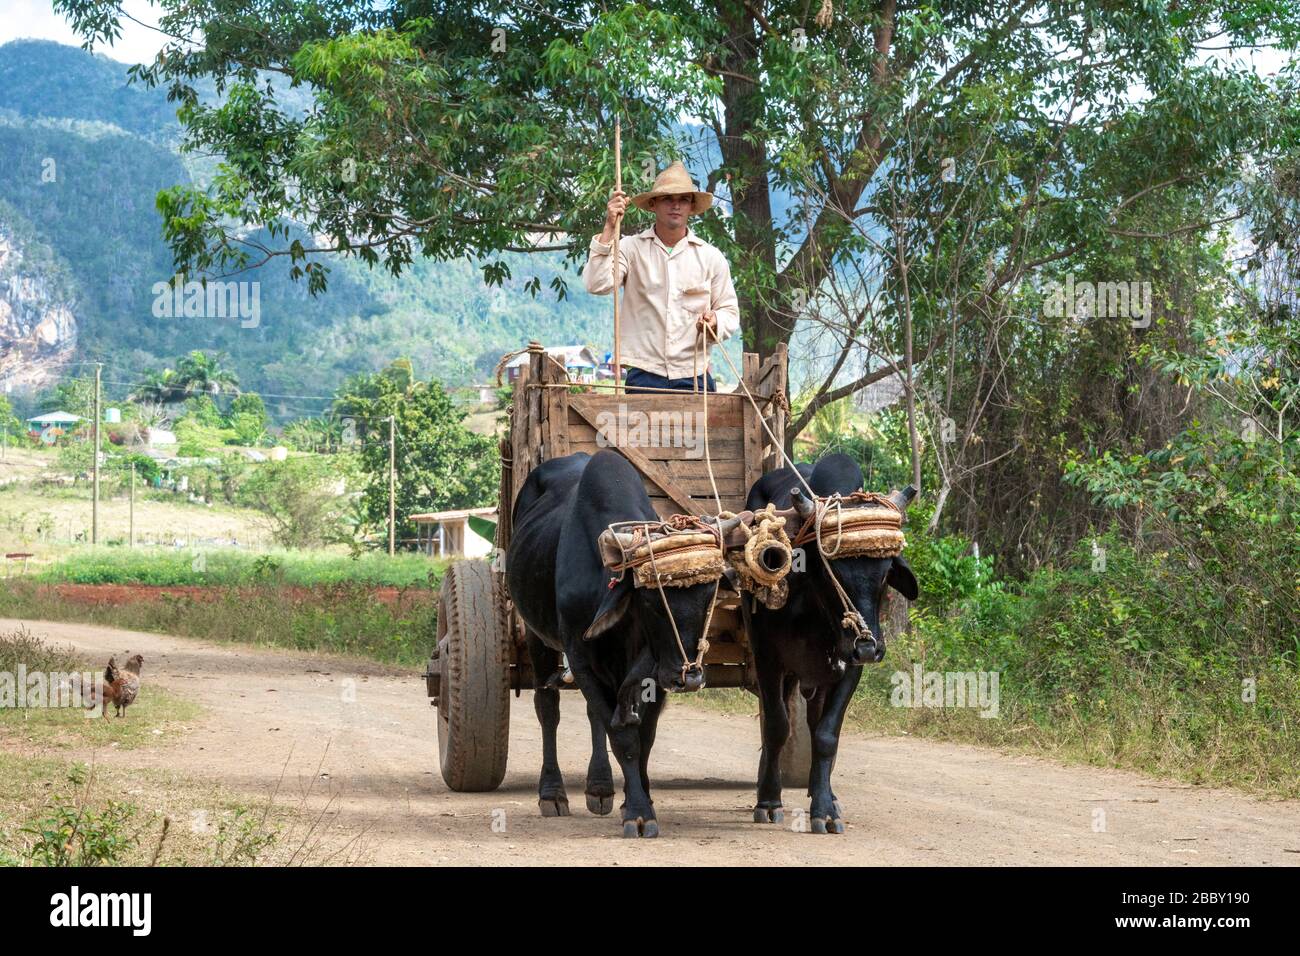 Uomo con carrello toro sulla strada, Vinales, provincia di Pinar del Rio, Cuba Foto Stock